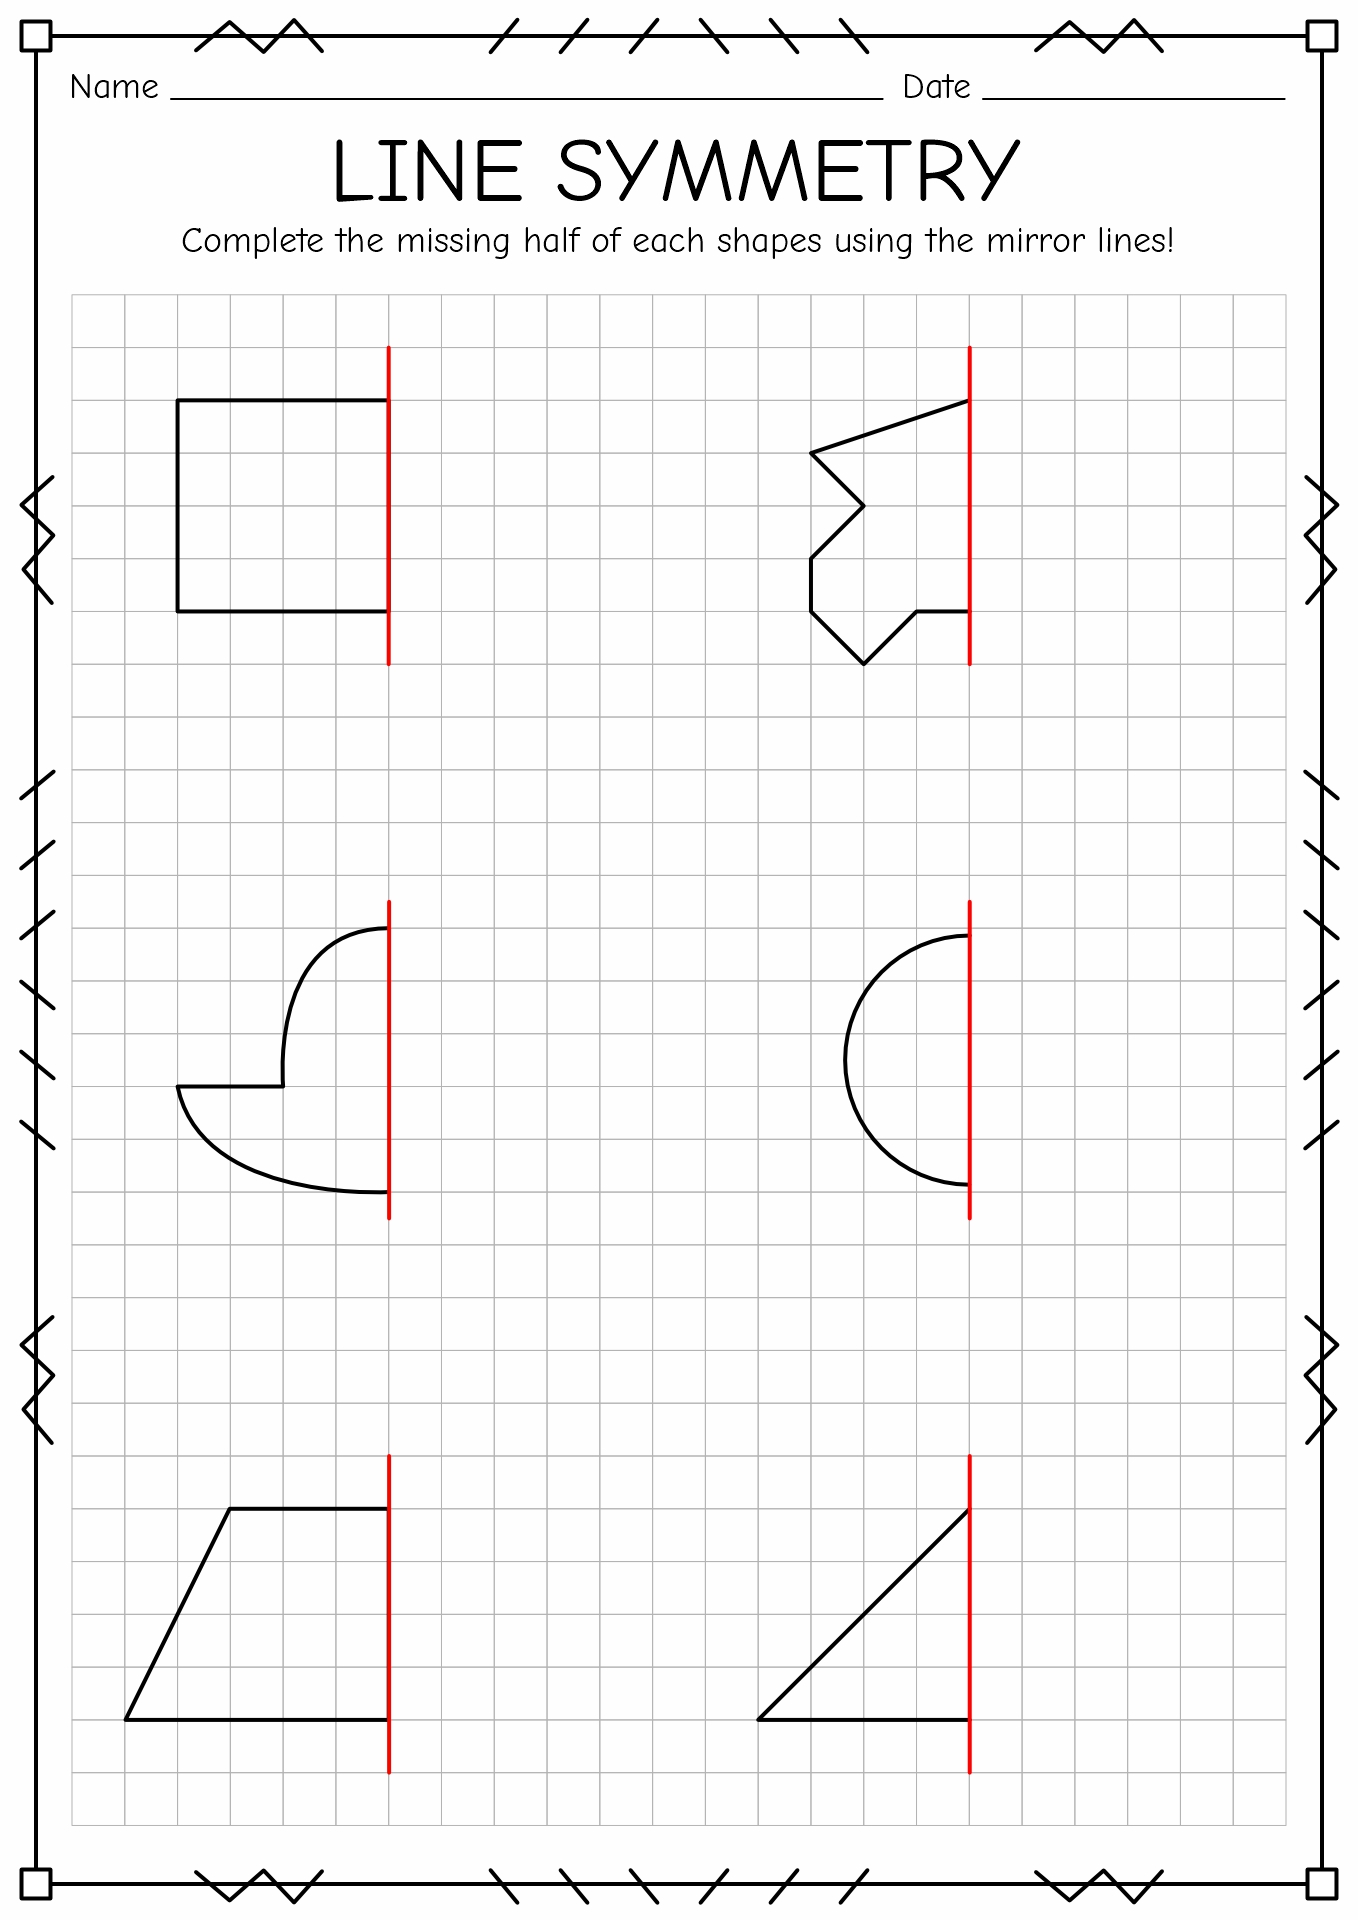 Line Symmetry Worksheet Printable Image